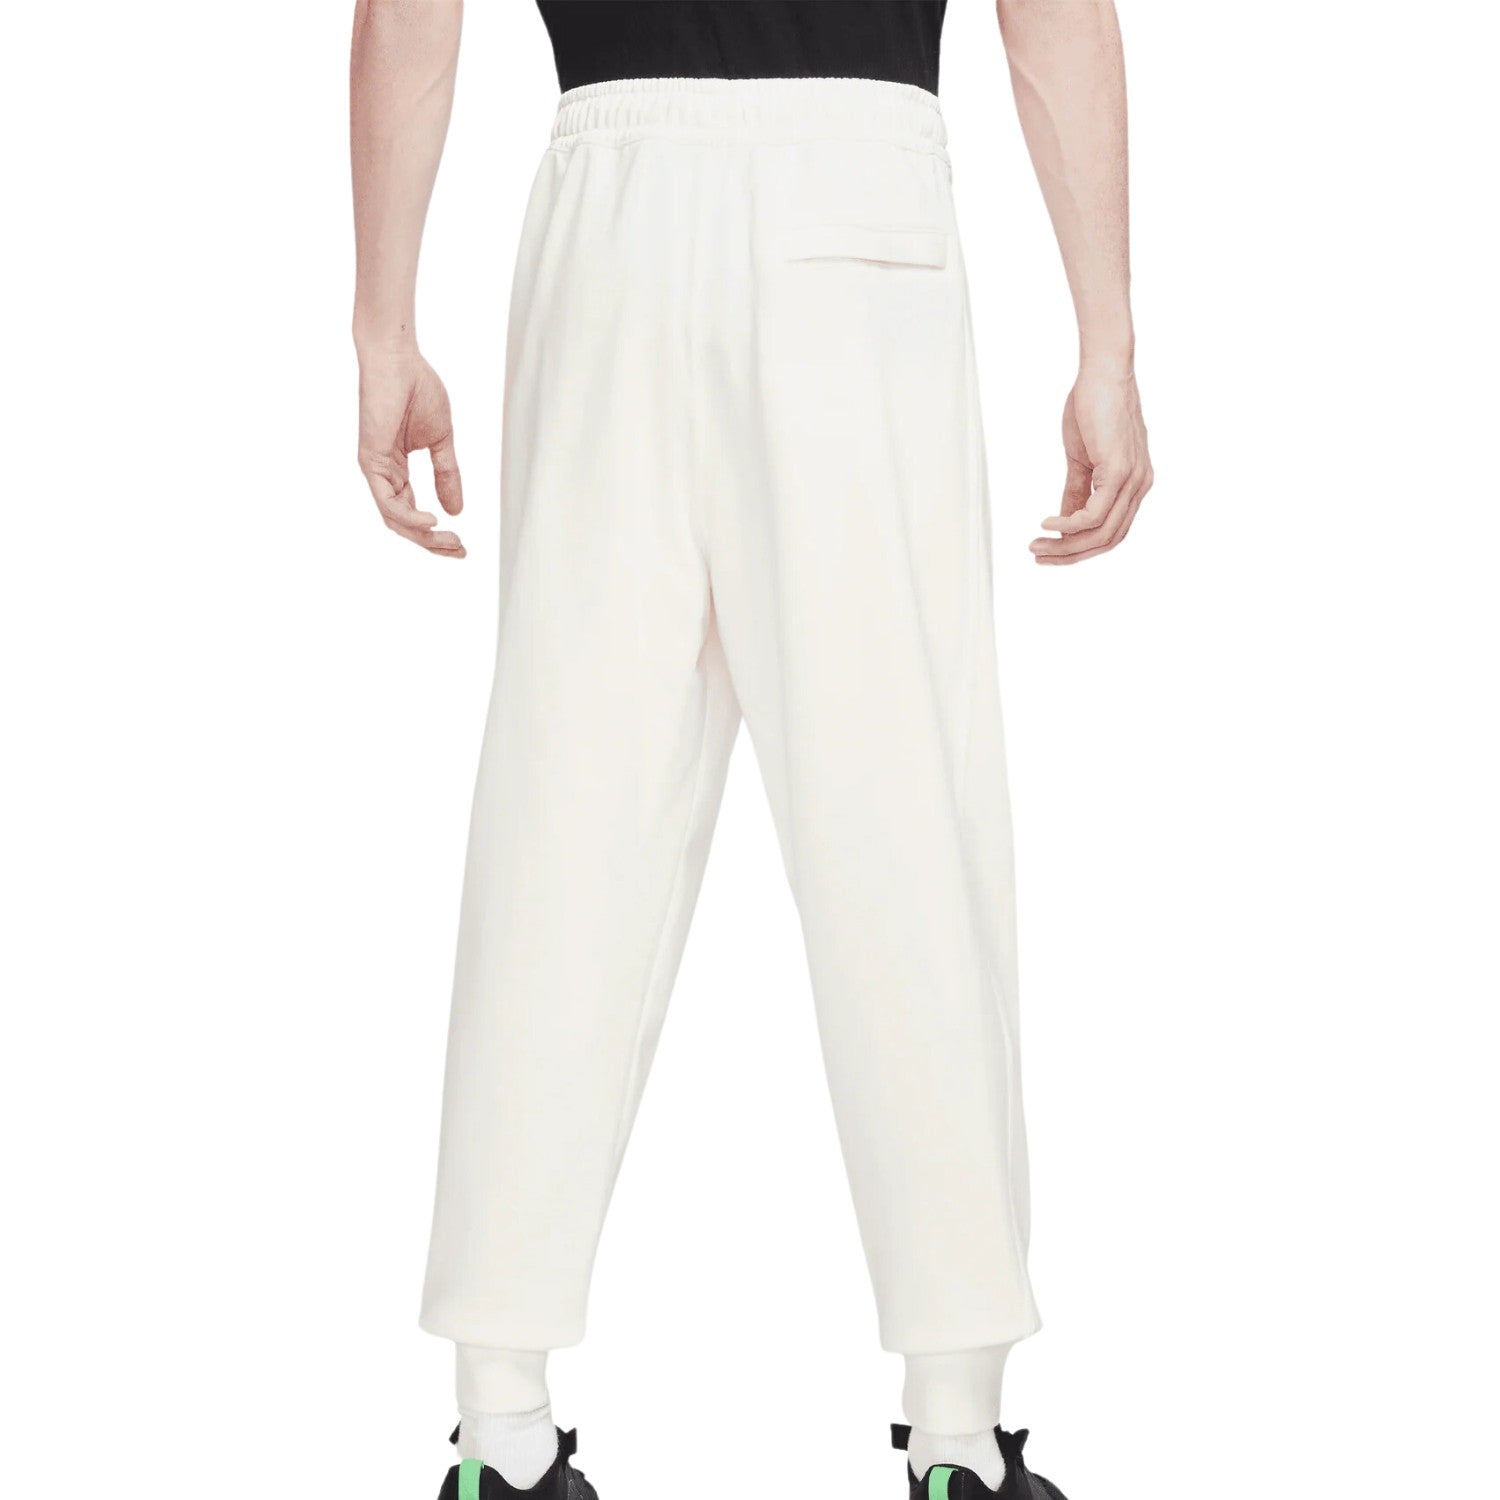 Nike Sportswear Trend Fleece Jogger Pants Mens Style : Fb7244